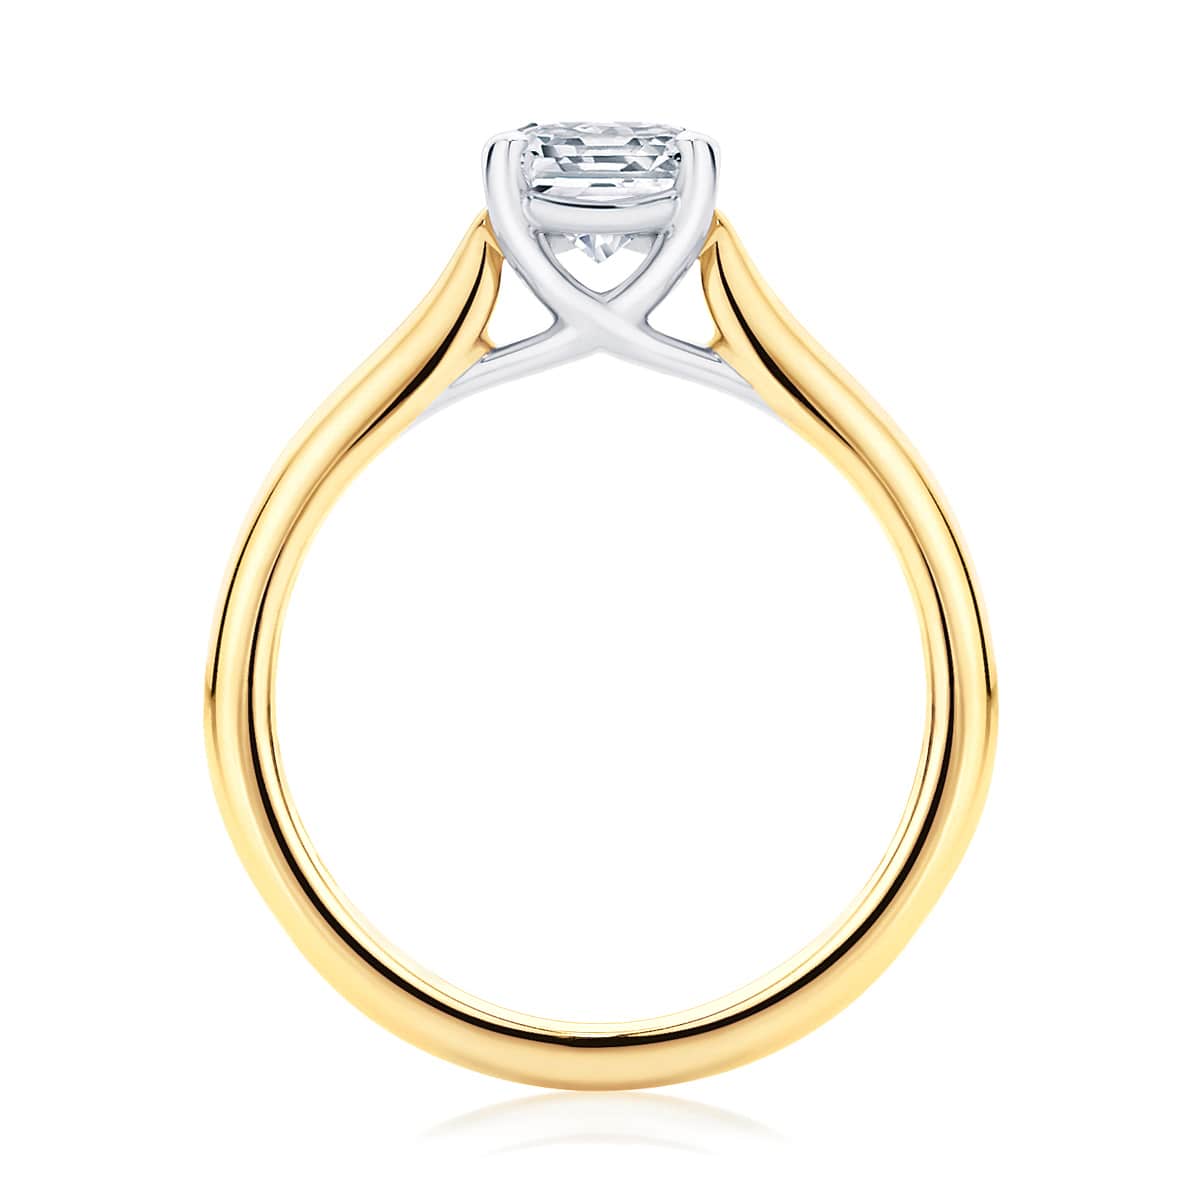 Asscher cut diamond engagement ring yellow gold solitaire